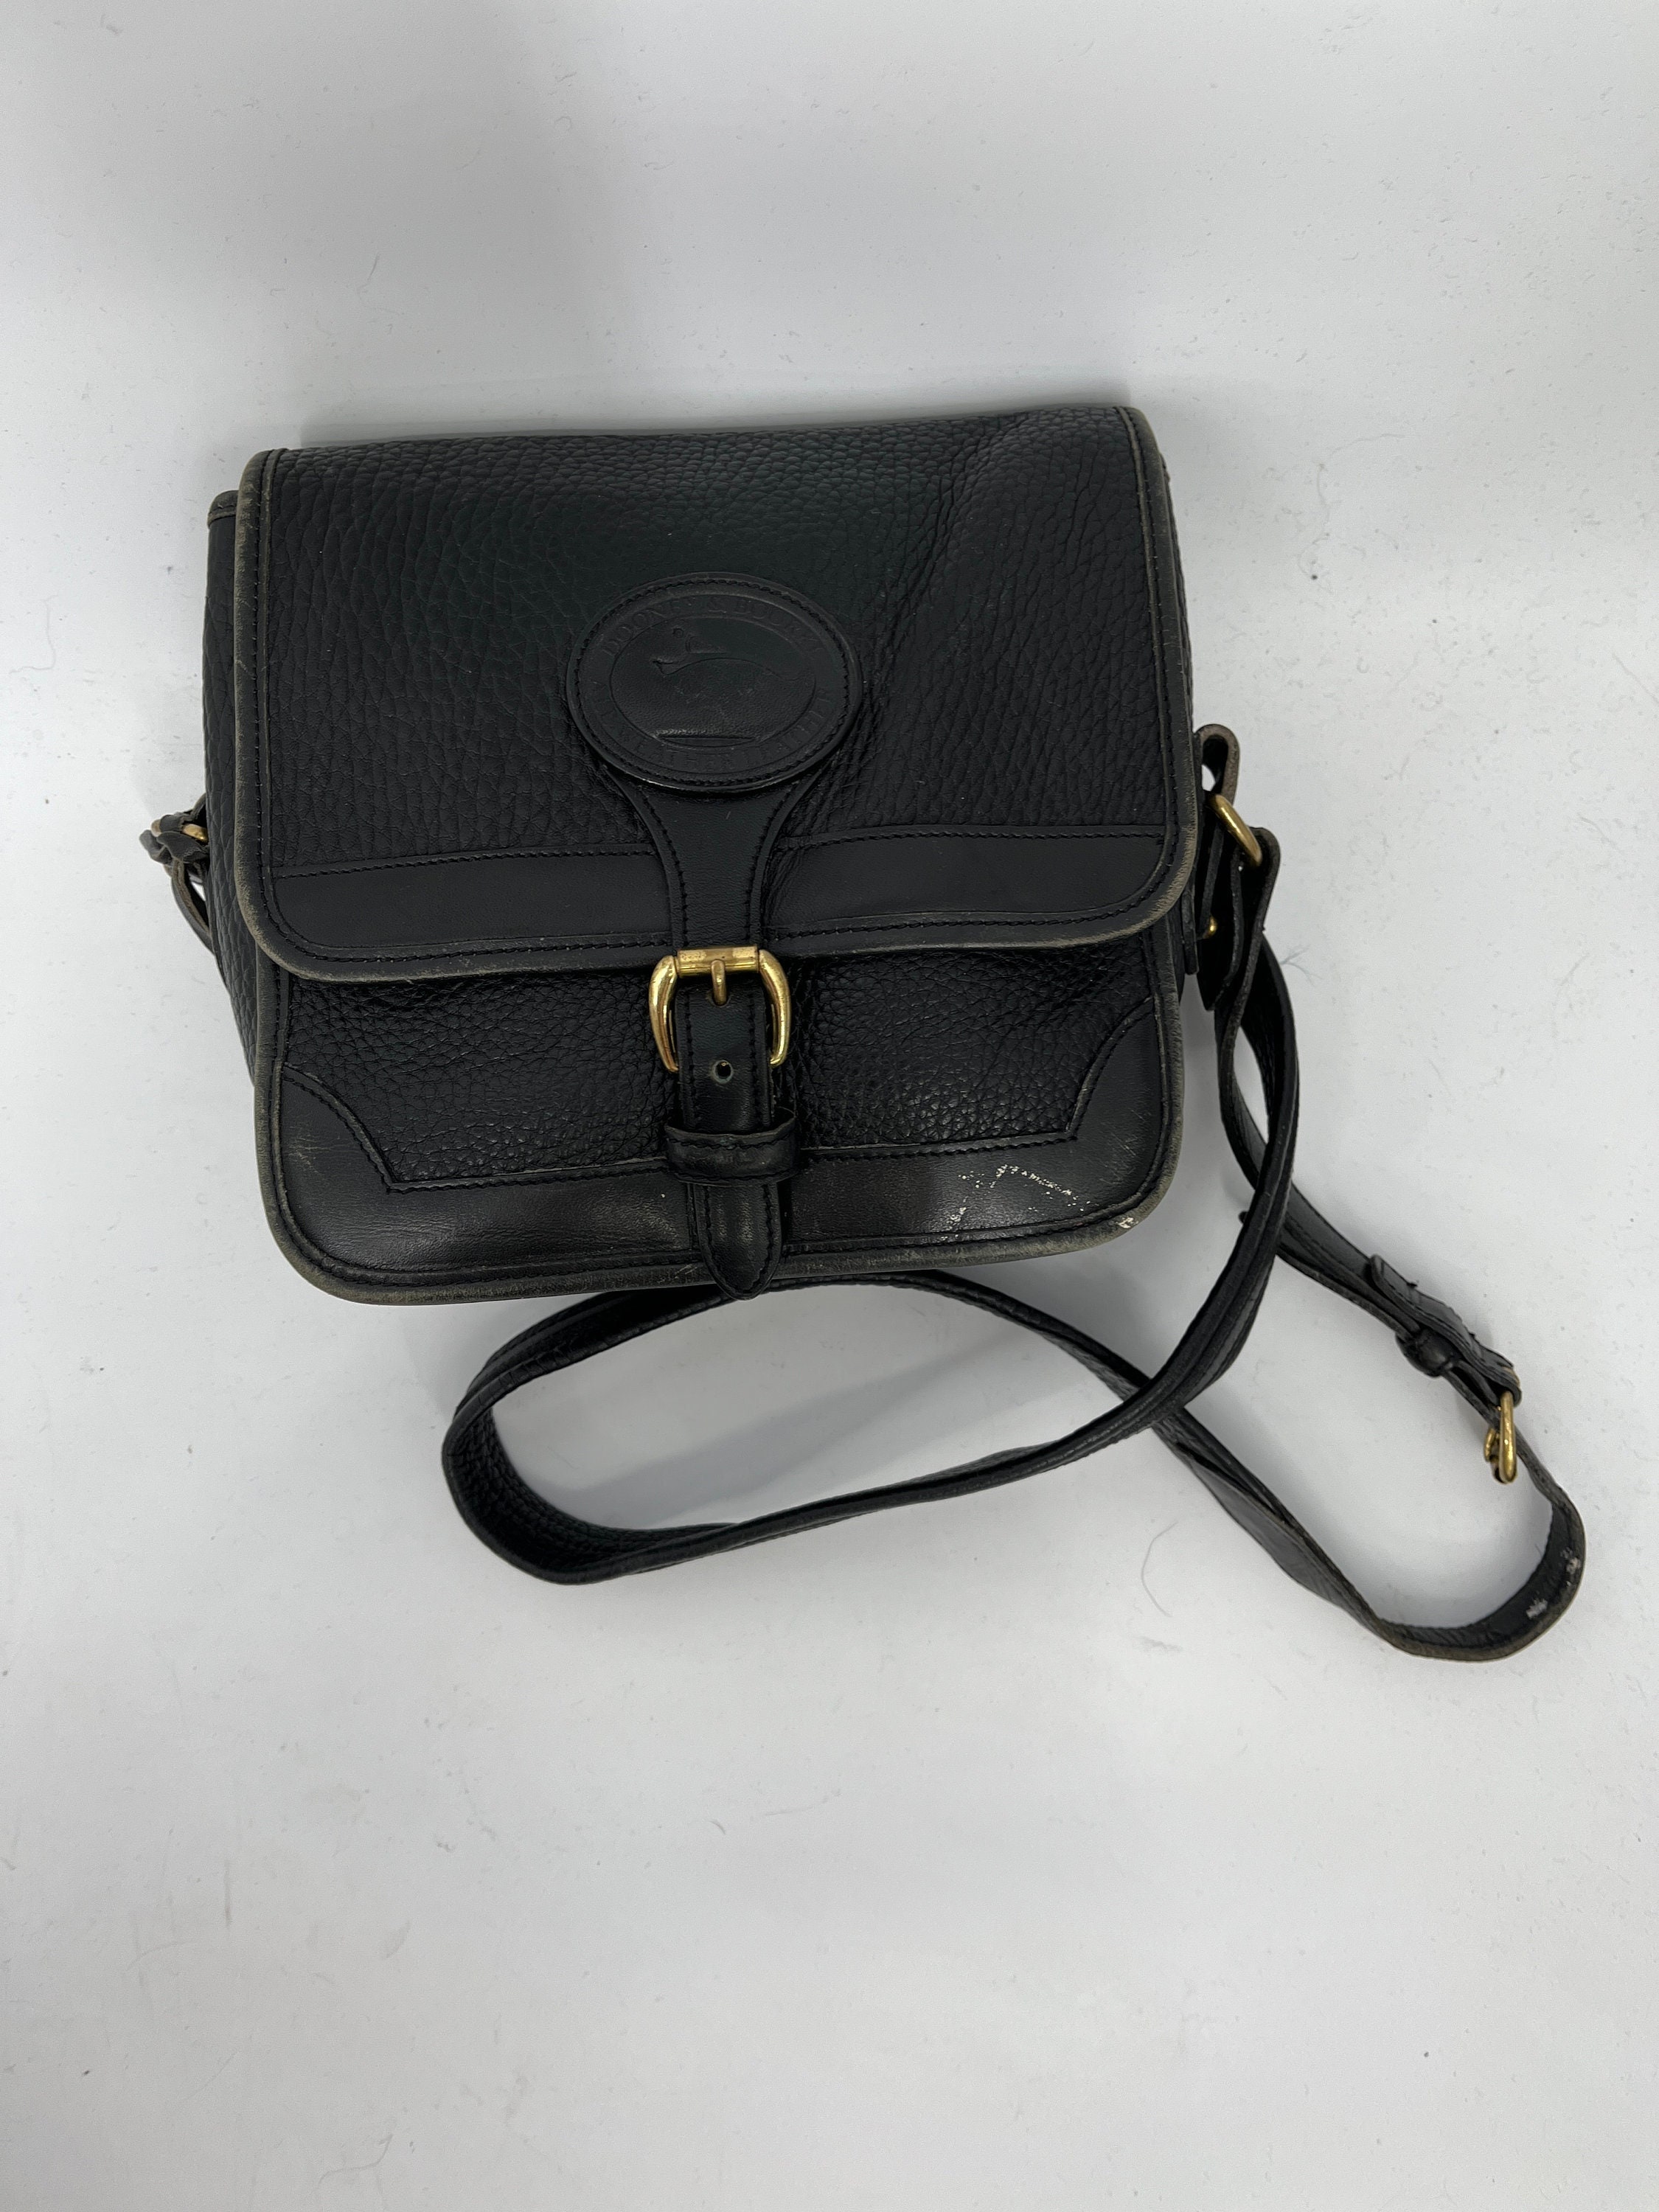 All Black Vintage Dooney & Bourke Carrier Handbag : All-Weather-Leather  Black Dooney Carrier Bag 